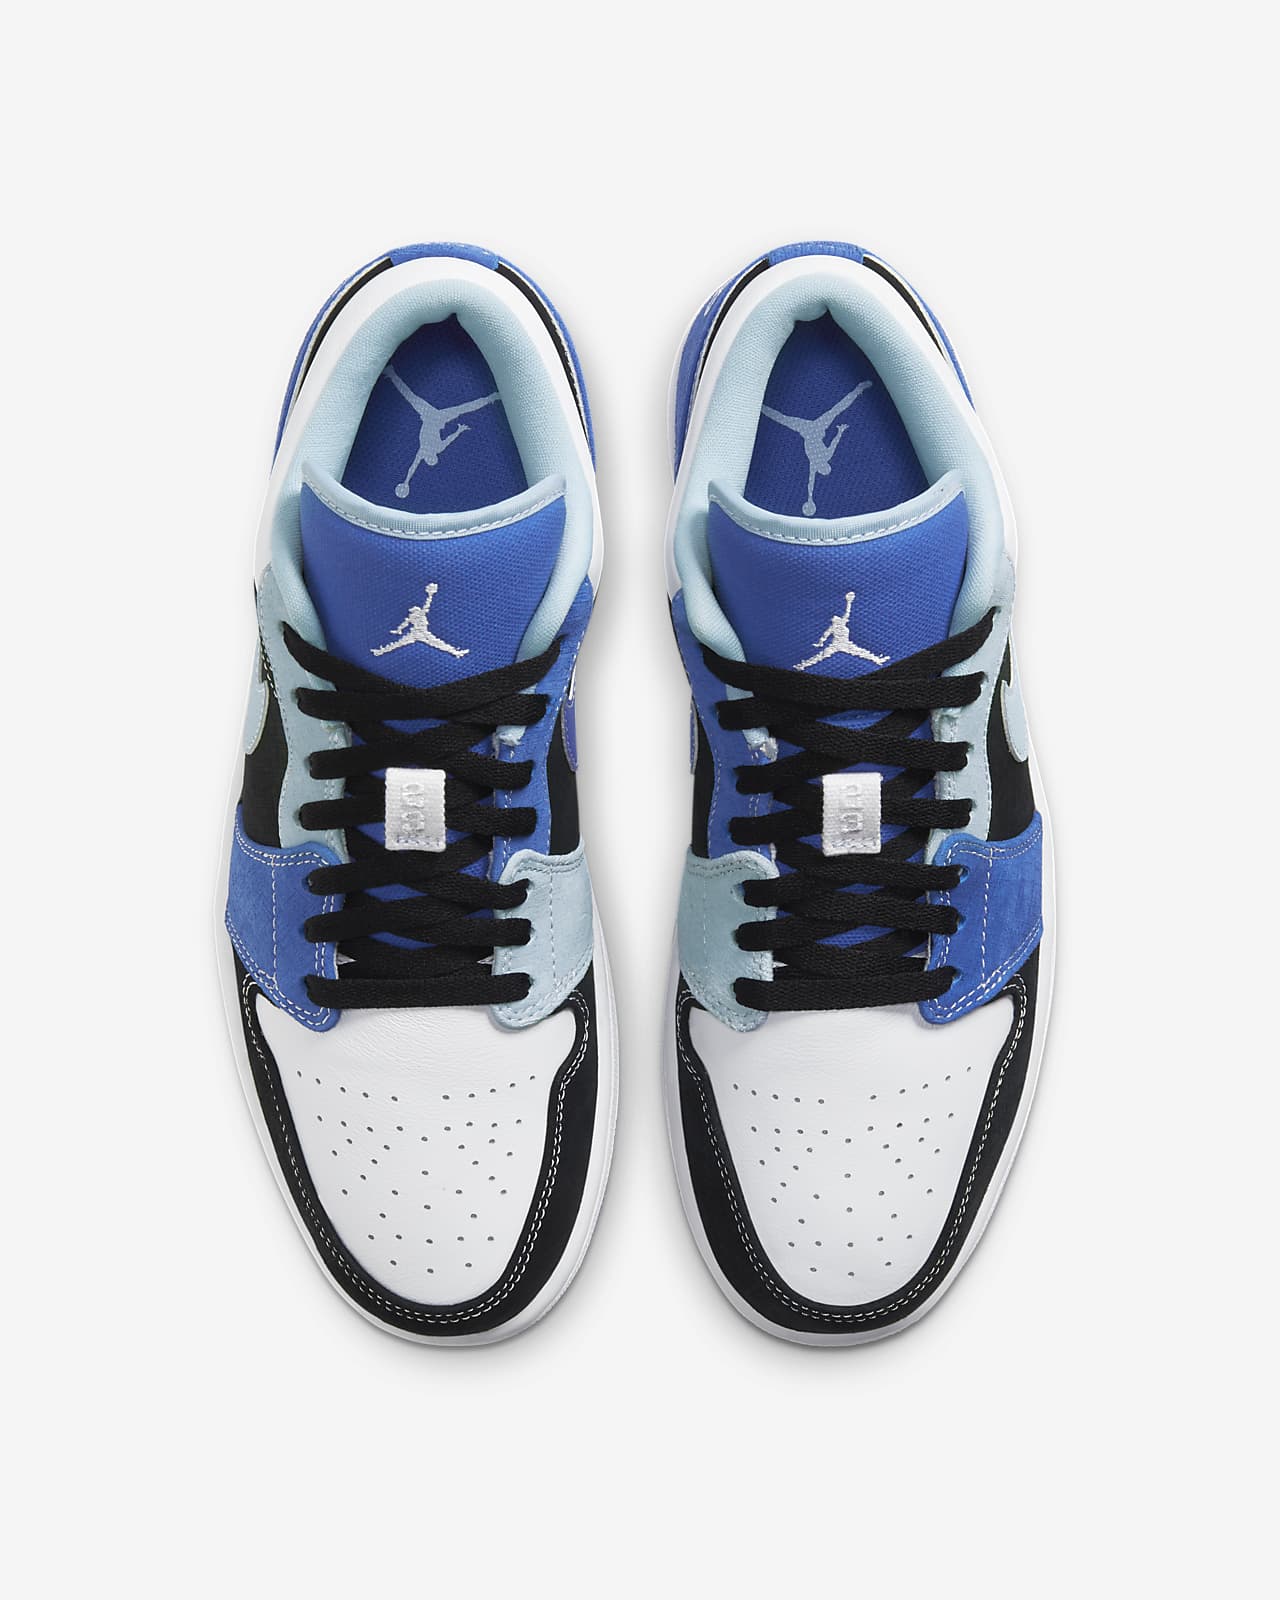 Air Jordan 1 Low Se Shoe Nike Id